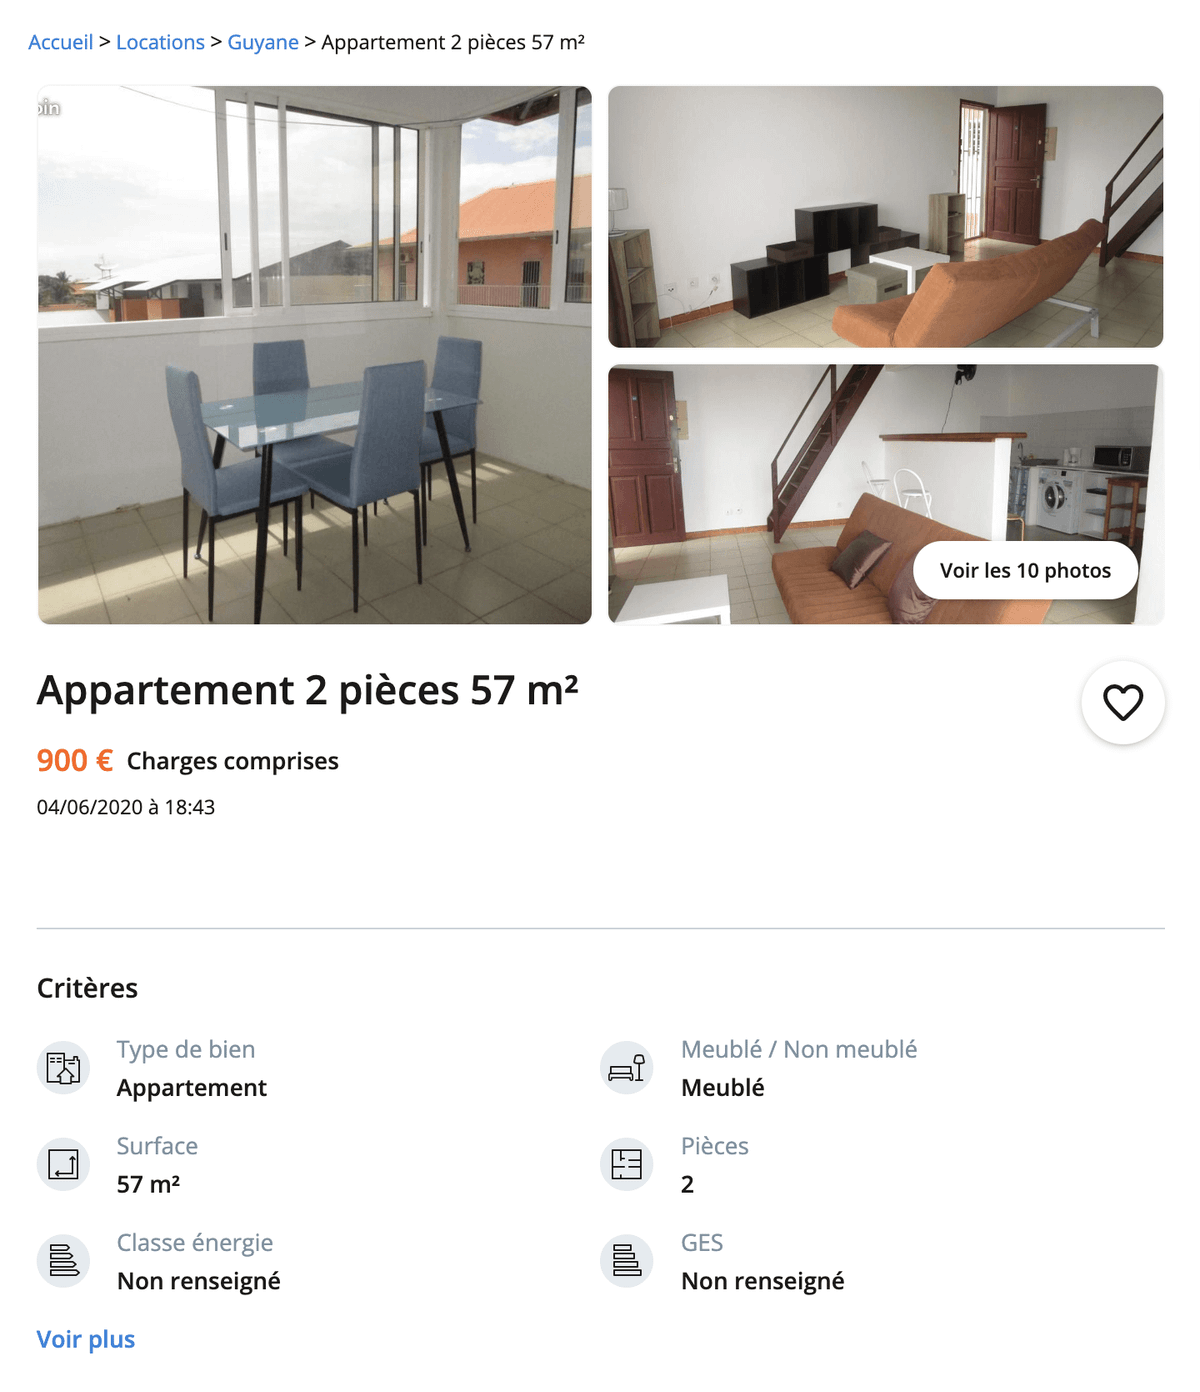 Квартира с двумя комнатами — 900 €